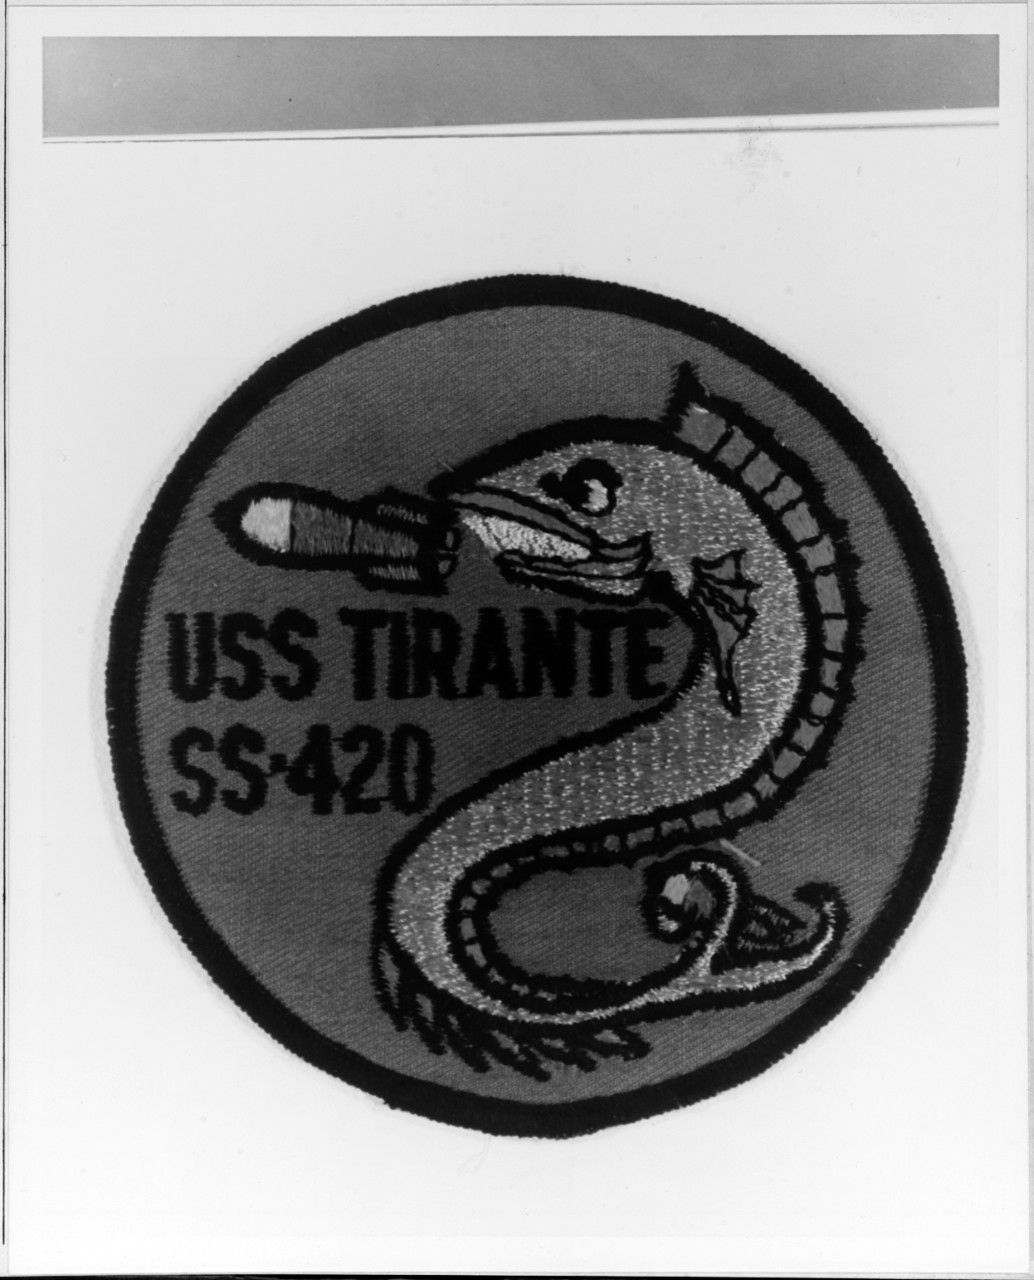 Insignia:  USS TIRANTE (SS-420)